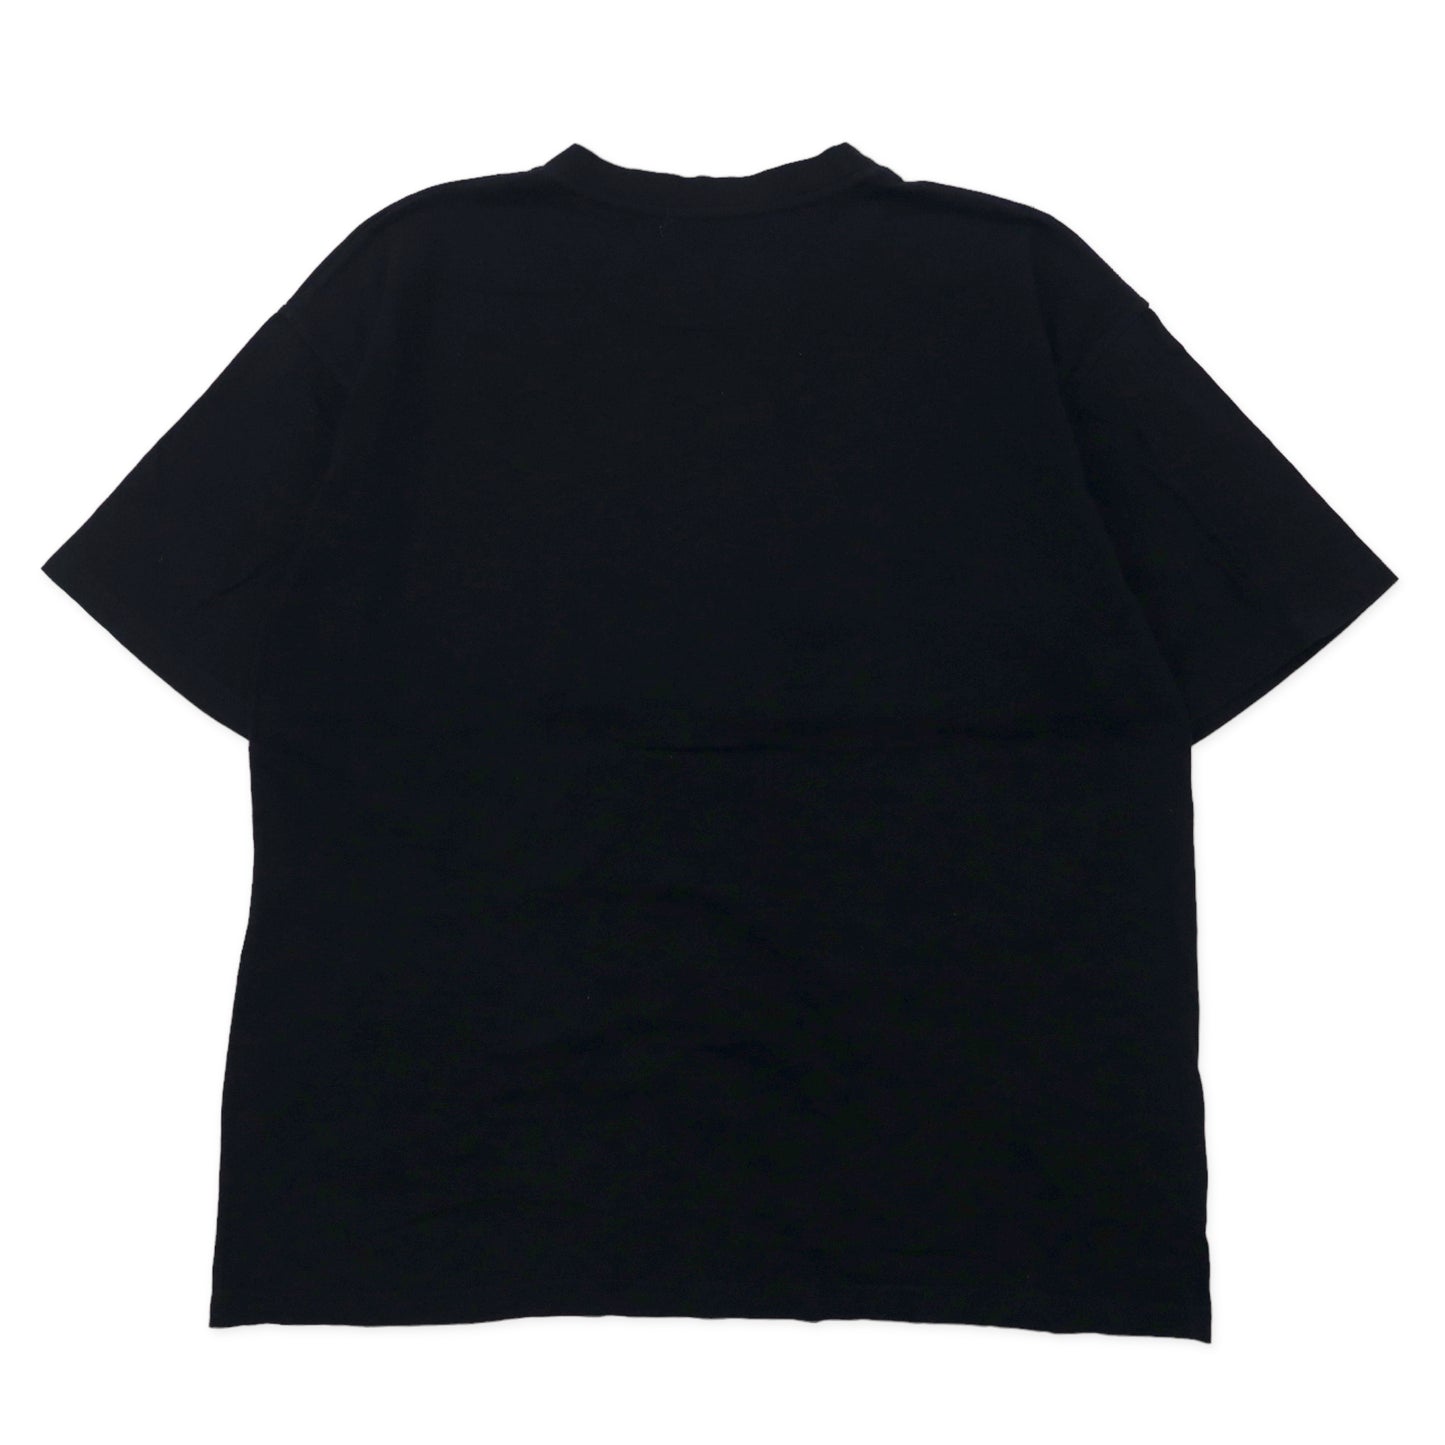 ICEBERG × Disney キャラクター Tシャツ XL ブラック コットン ミッキーマウス イタリア製